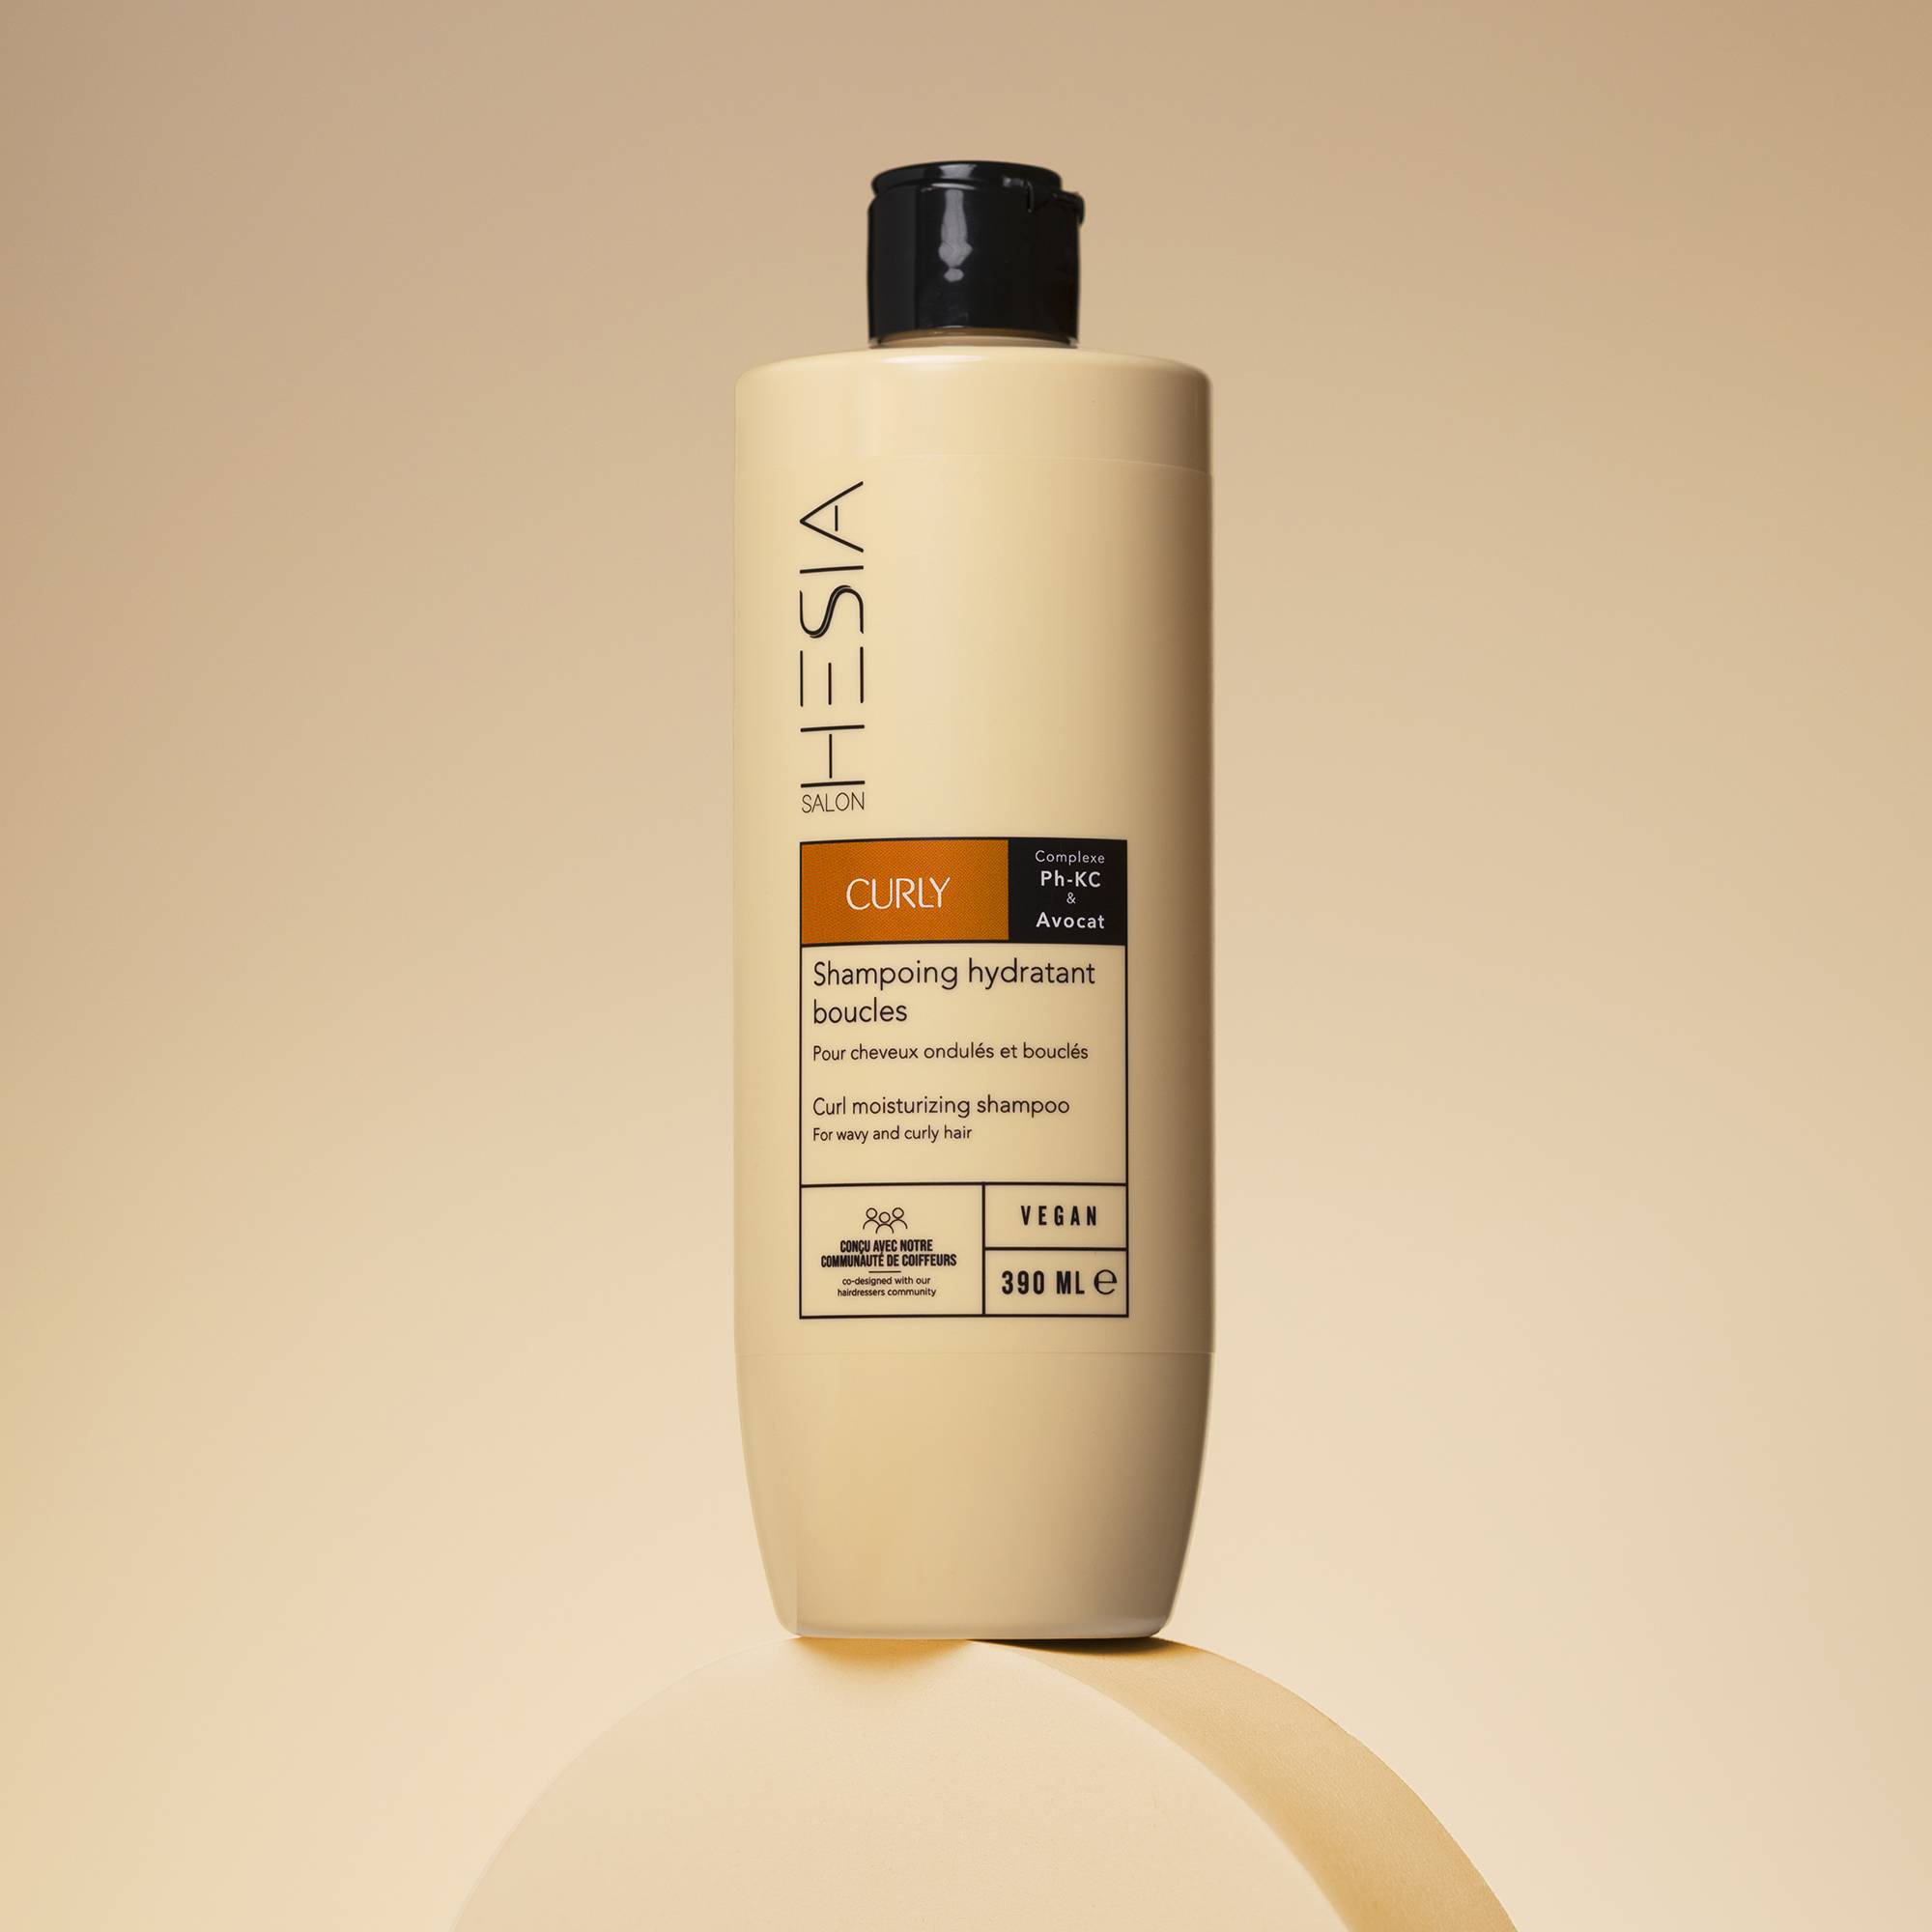 Shampoing hydratant boucles Curly de la marque HESIA Salon Contenance 390ml - 3